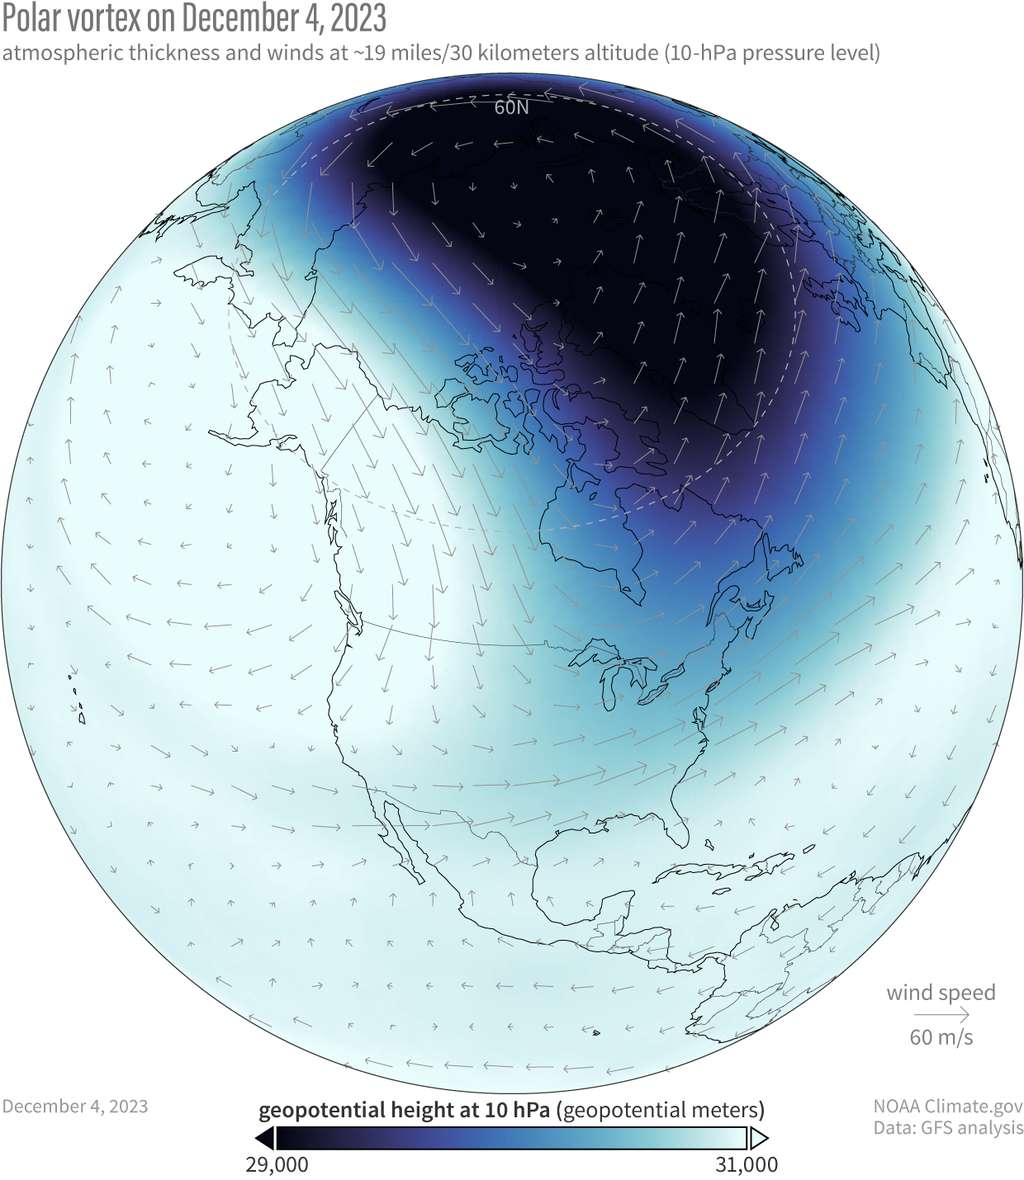 En noir, le vortex polaire à sa position normale en décembre 2023 avec des vents d'ouest en est à l'intérieur. © NOAA